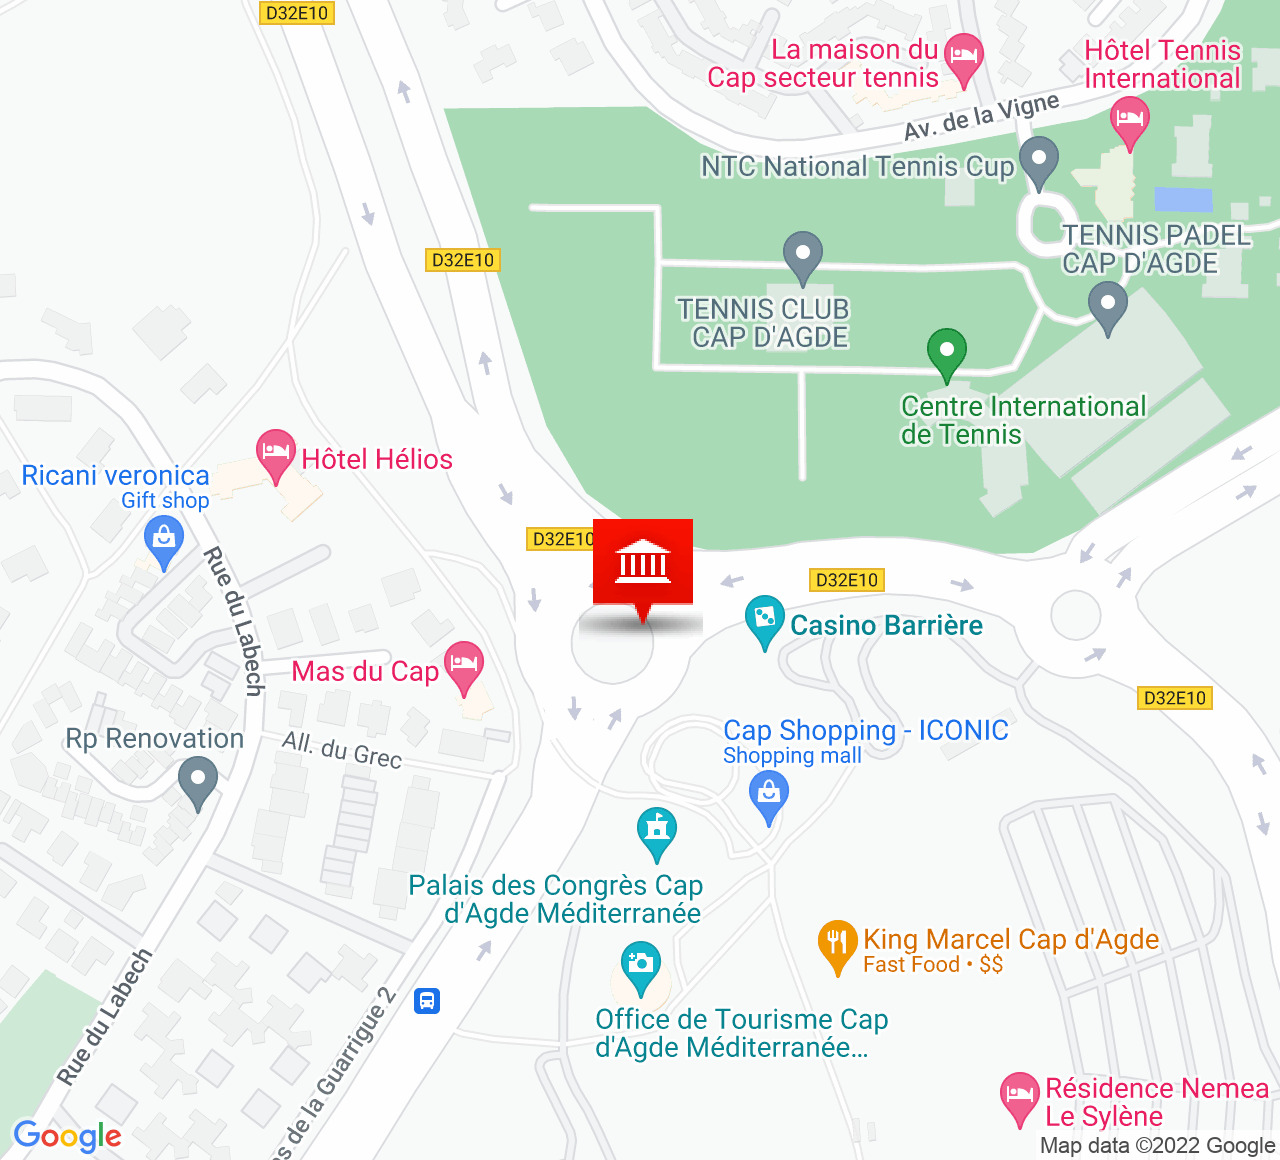 Plan d’accès Palais des Congres Cap d’Agde Méditerranée